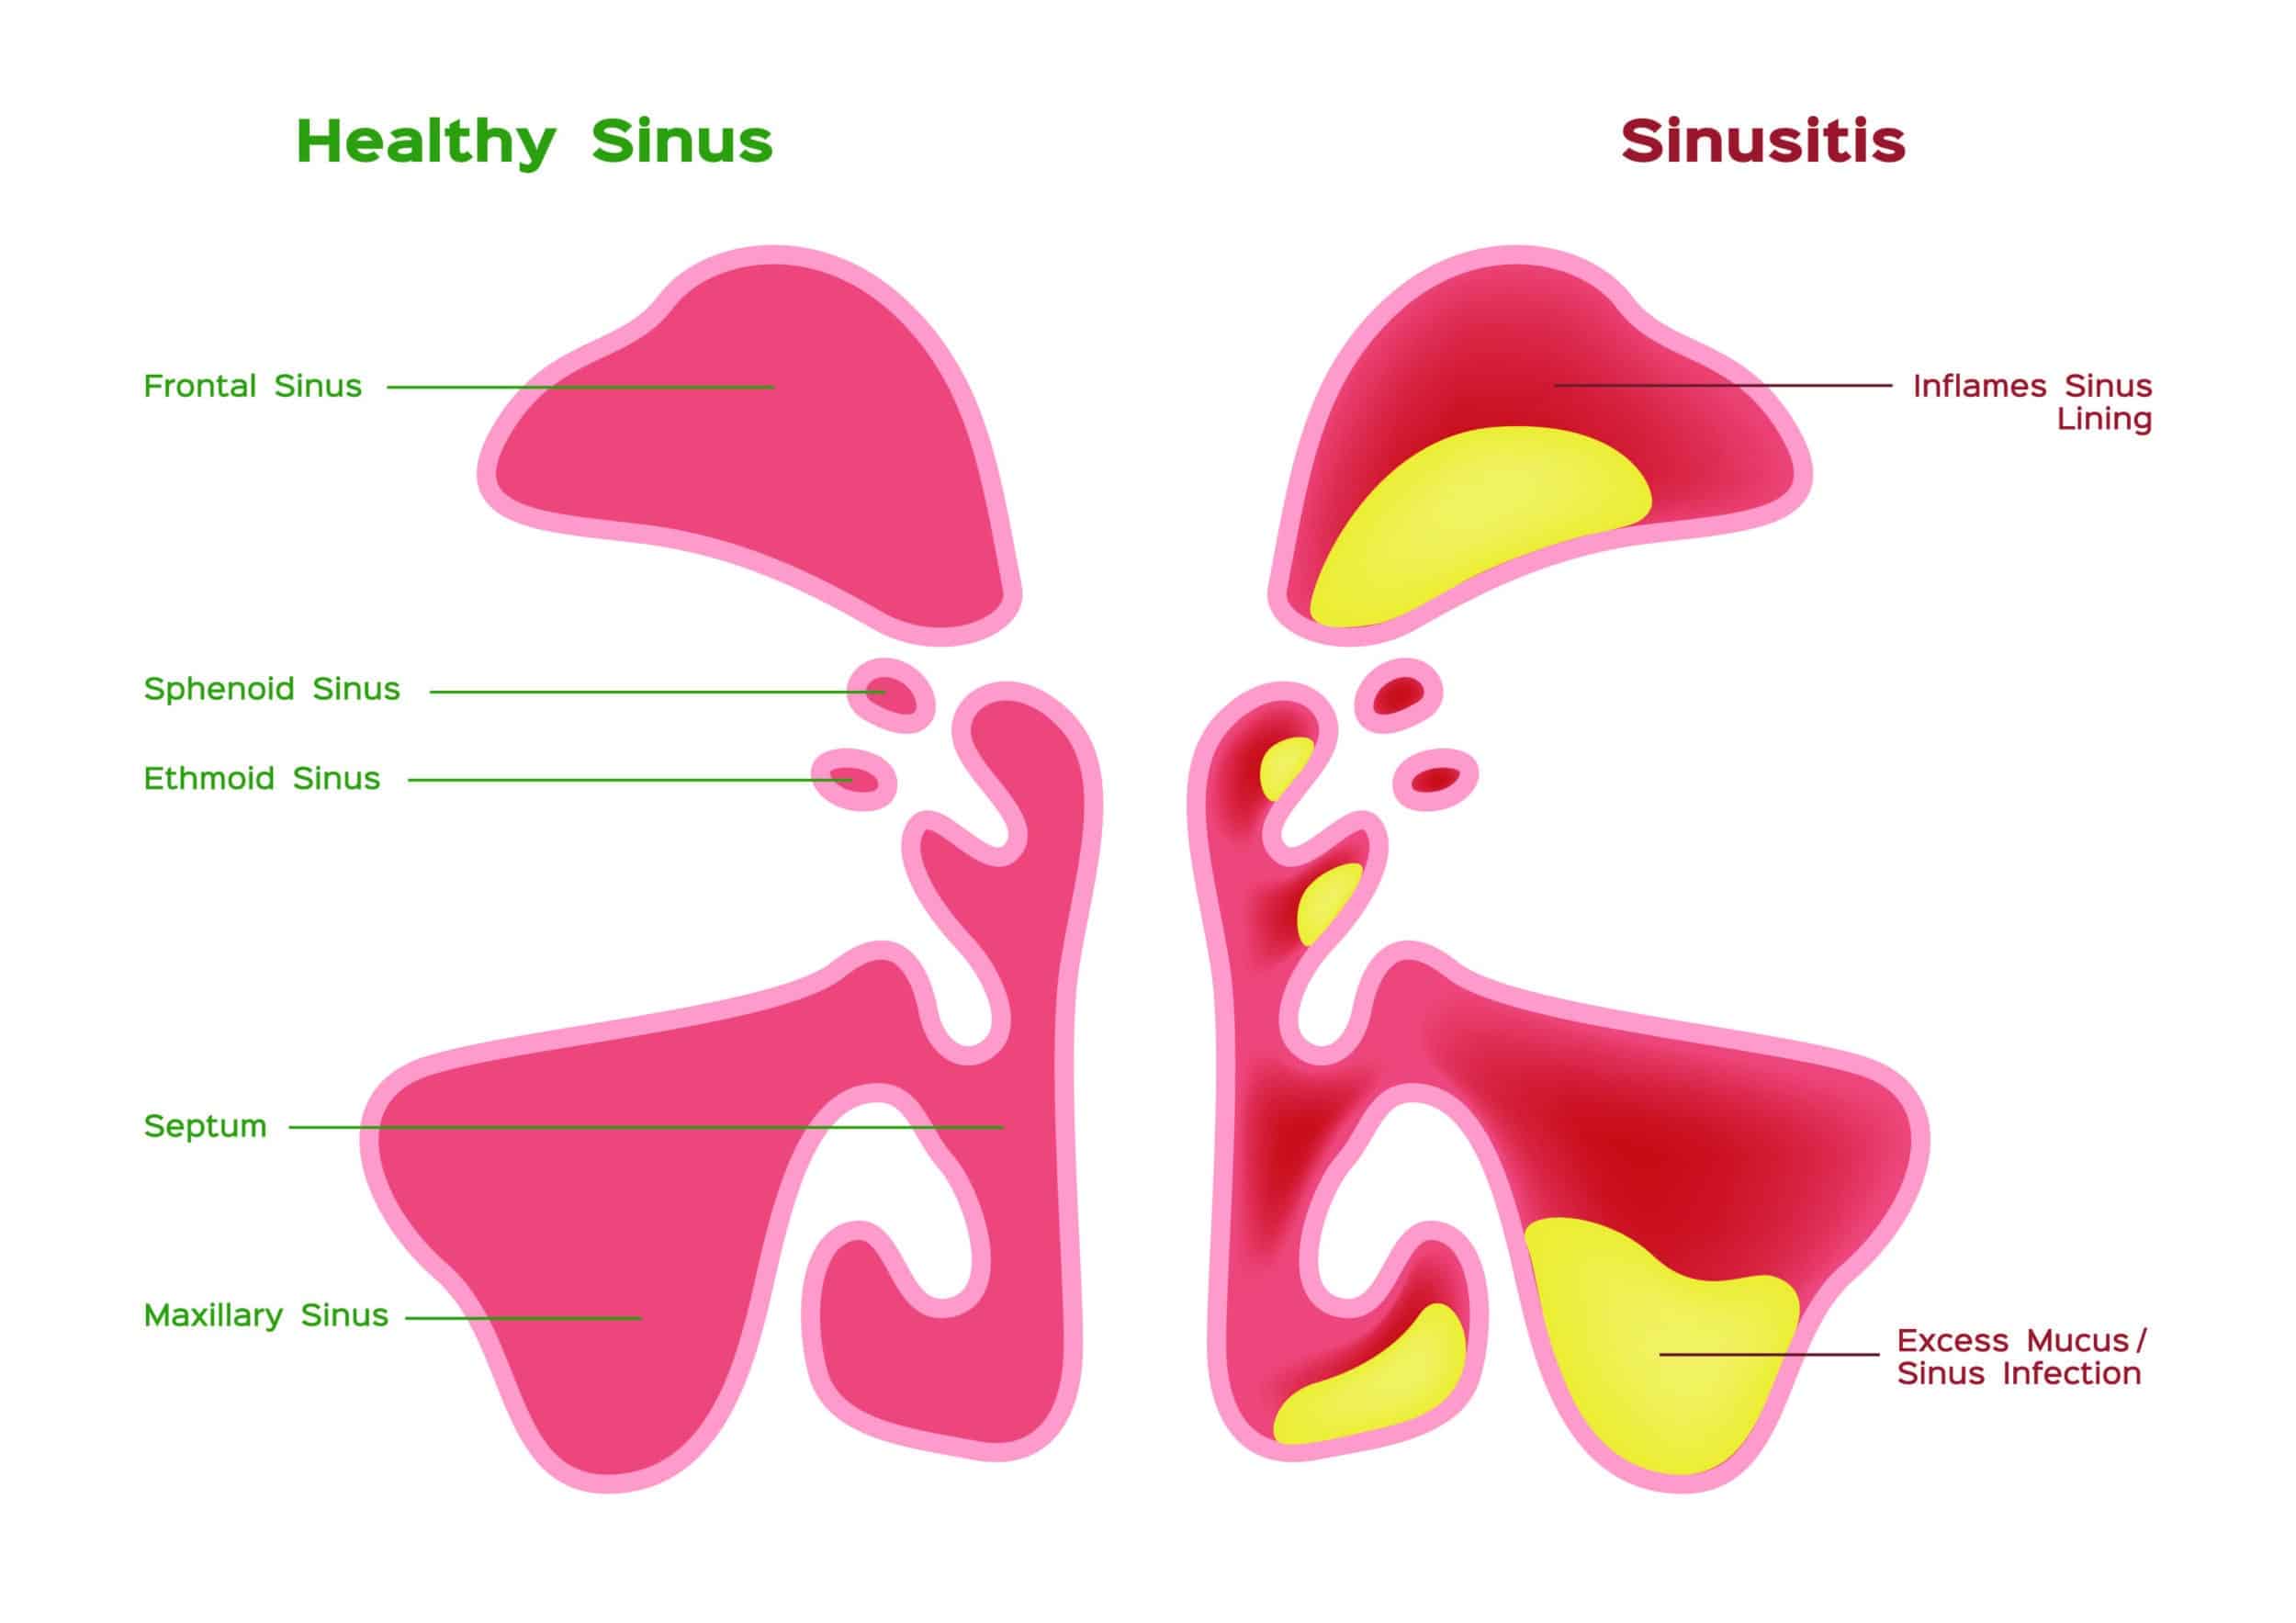 Healthy sinus versus sinus disease